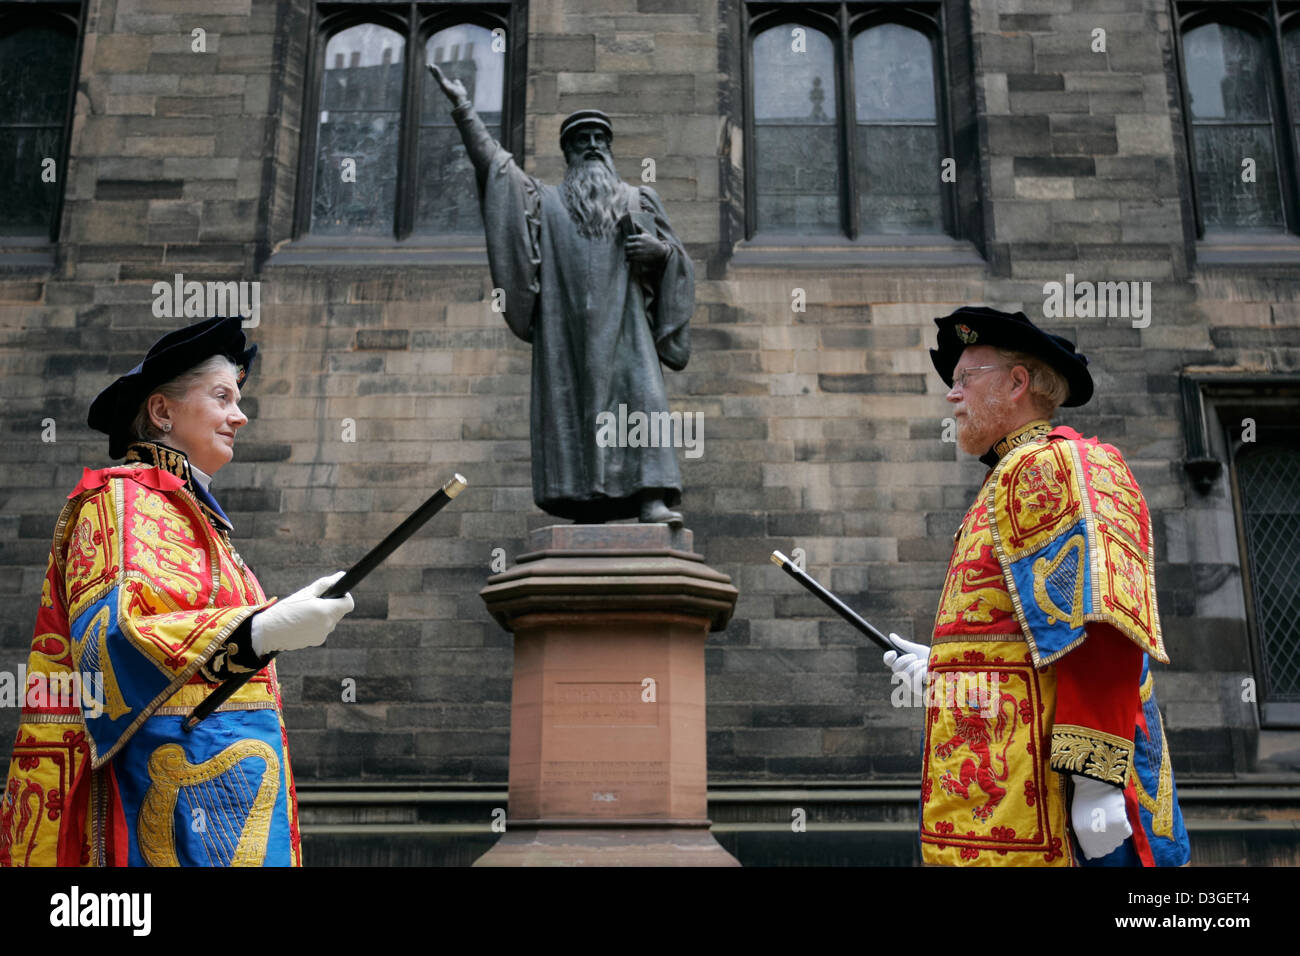 Deux hérauts se tenir en face de la statue de John Knox à l'Assemblée générale de l'Église d'Écosse, 2005 Banque D'Images